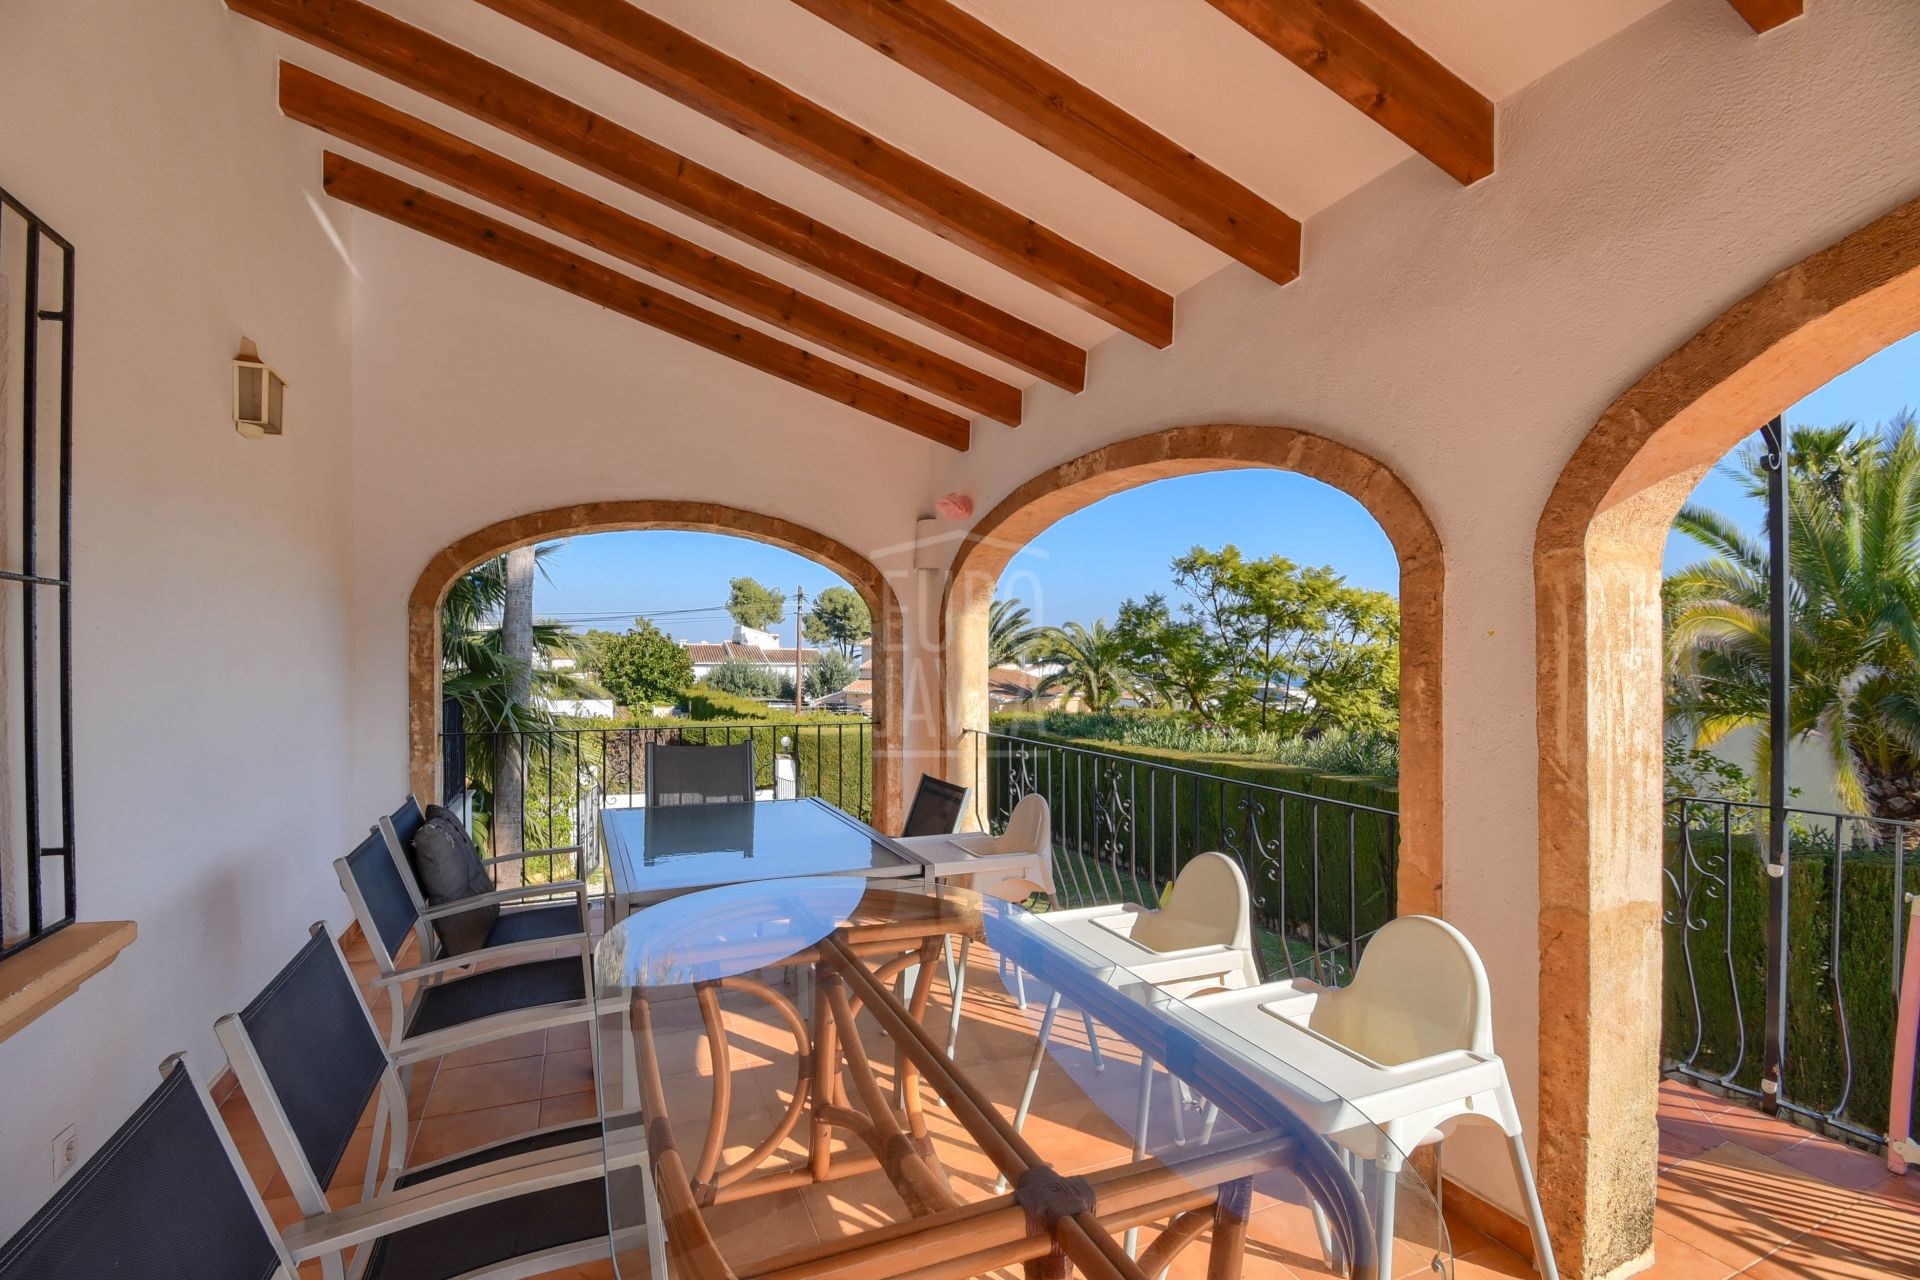 Villa a la venta en la zona de Cap Marti, en una zona tranquila y con mucha privacidad